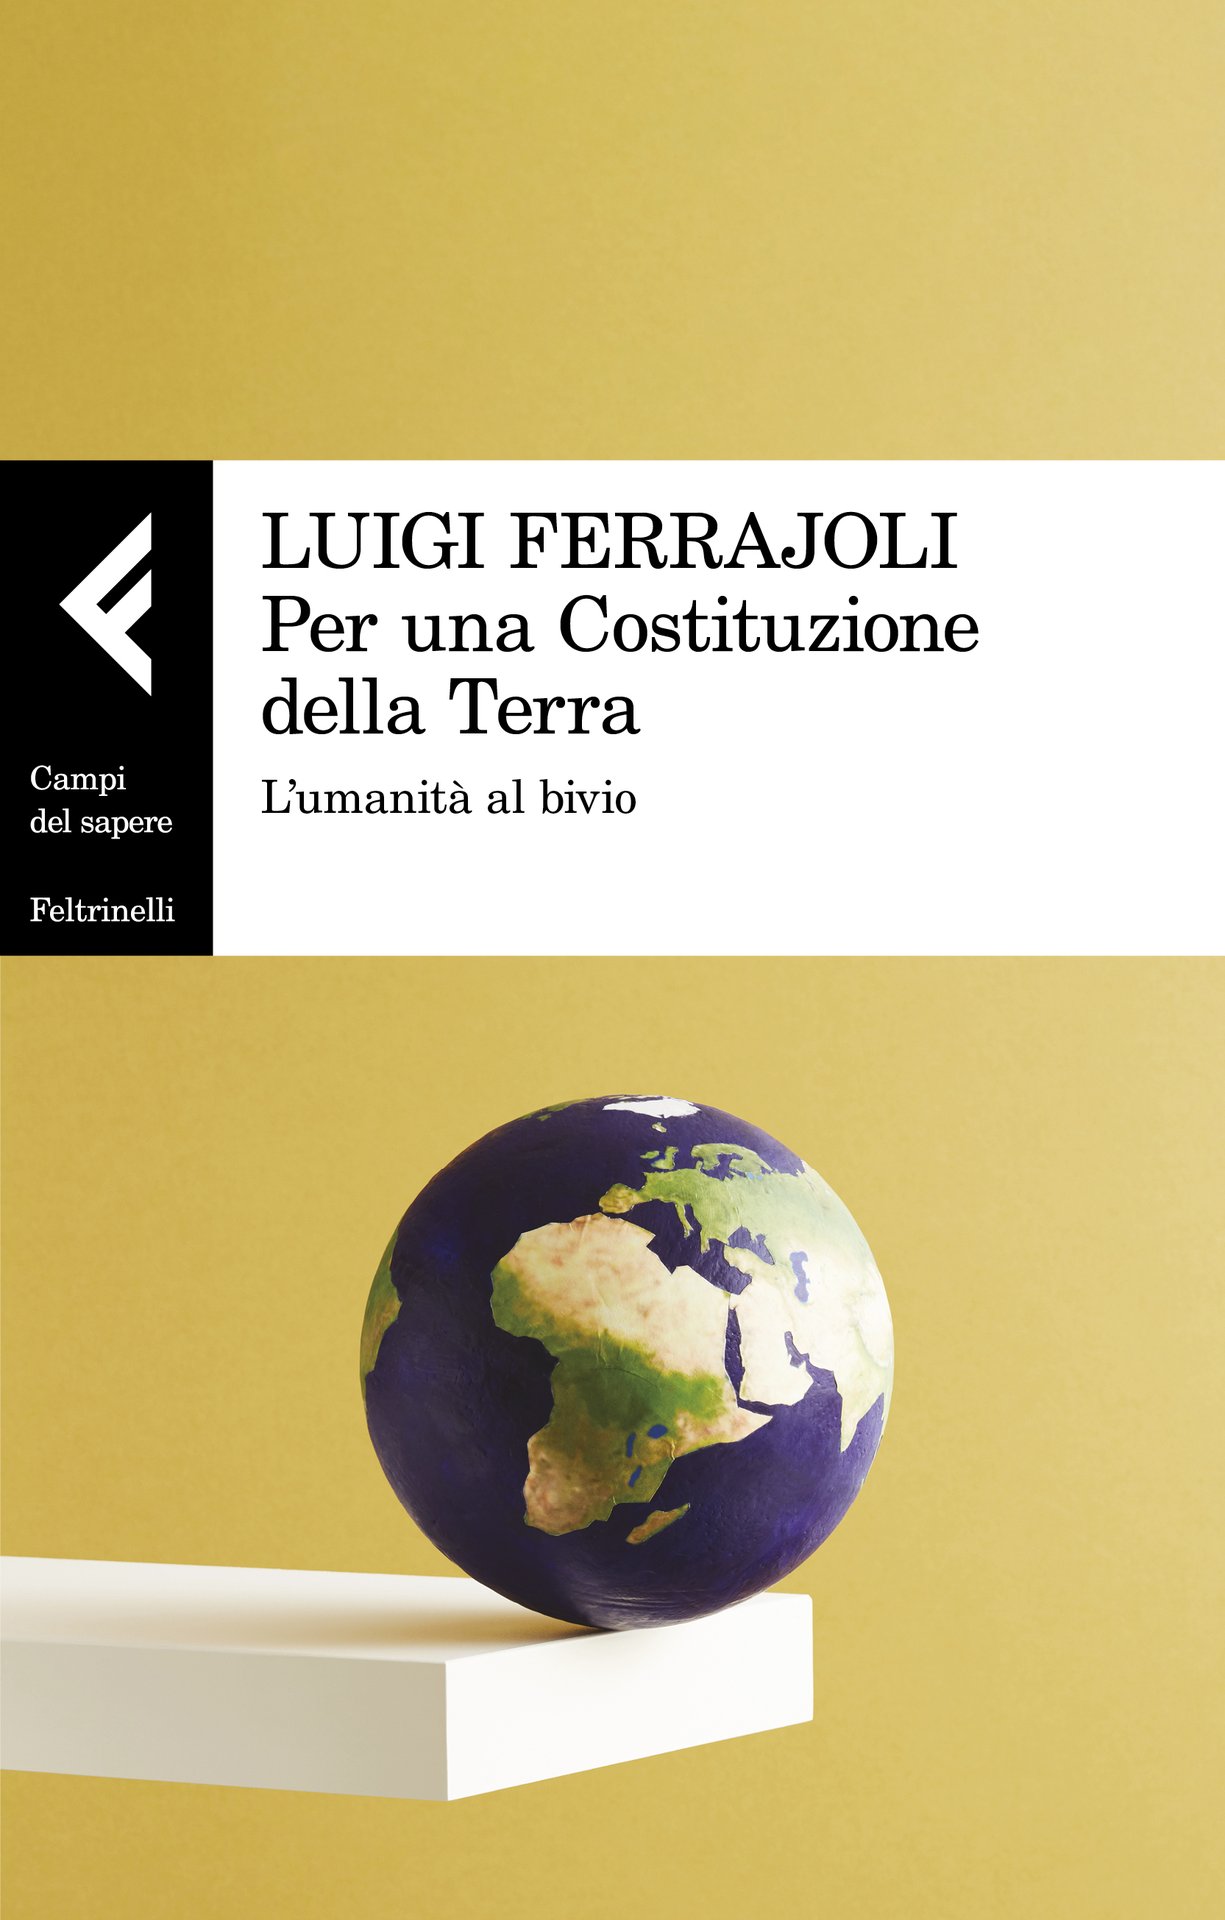 Luigi Ferrajoli presenta "Per una Costituzione della Terra" a Milano